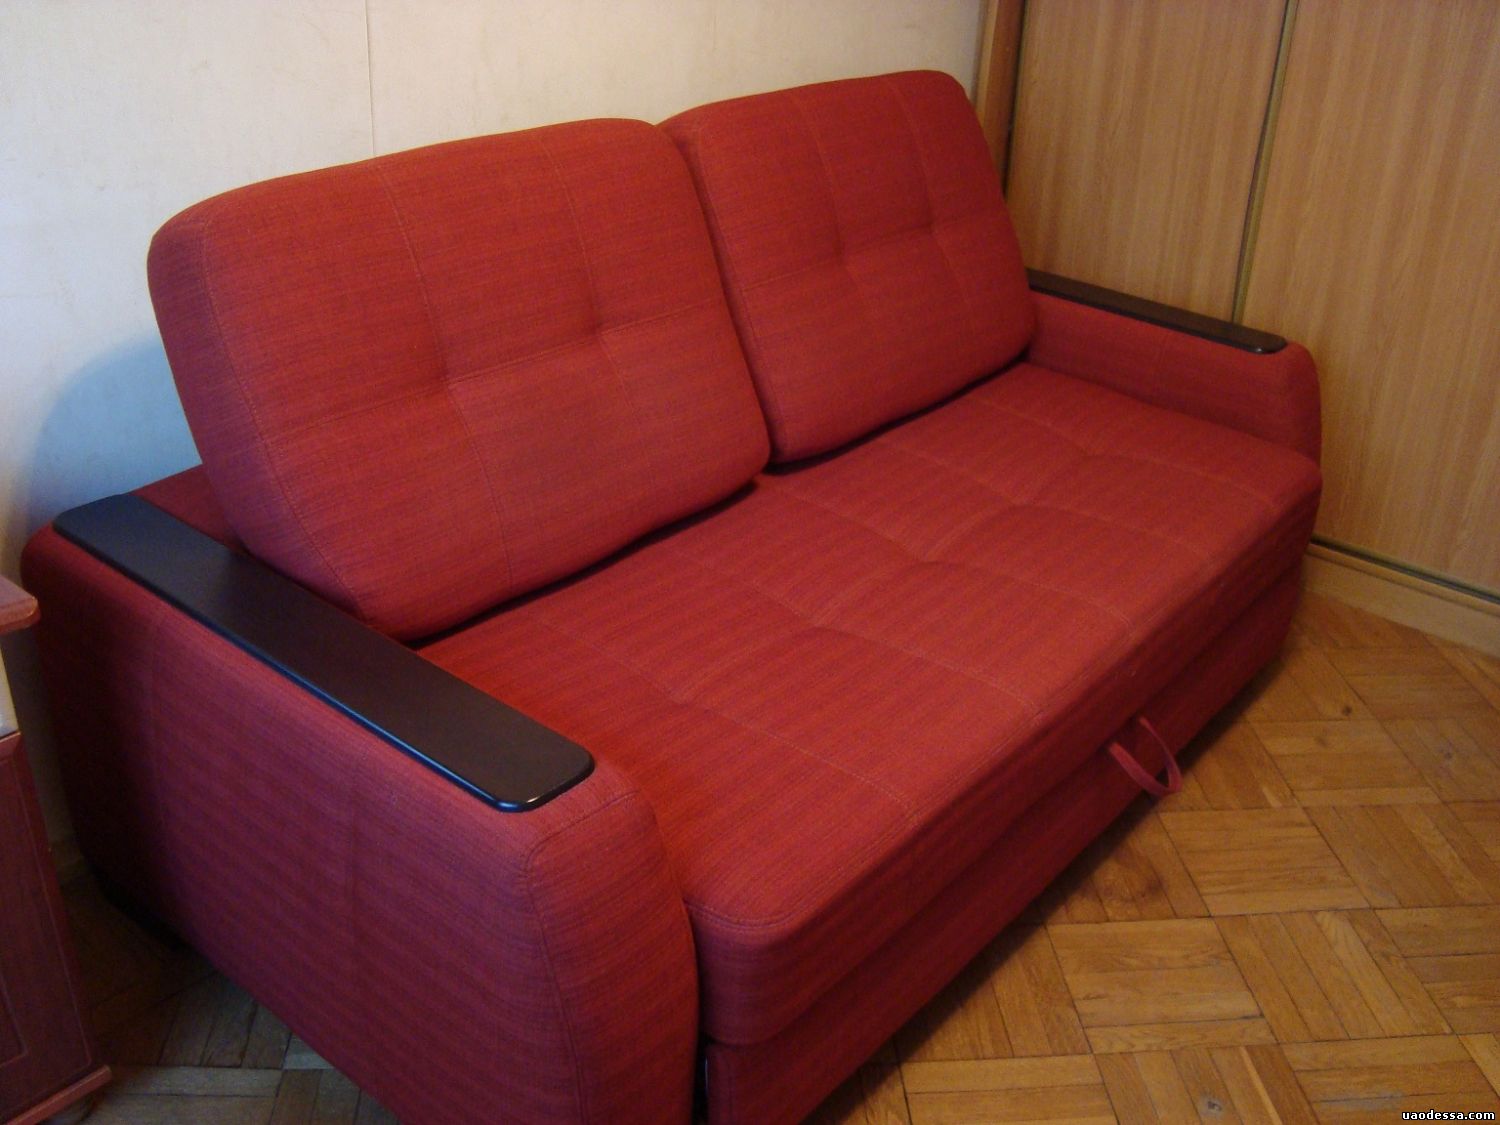 Куплю диван брянск б у. Дешевые диваны. Диван б/у. Бэушный диван. Самый дешевый диван.